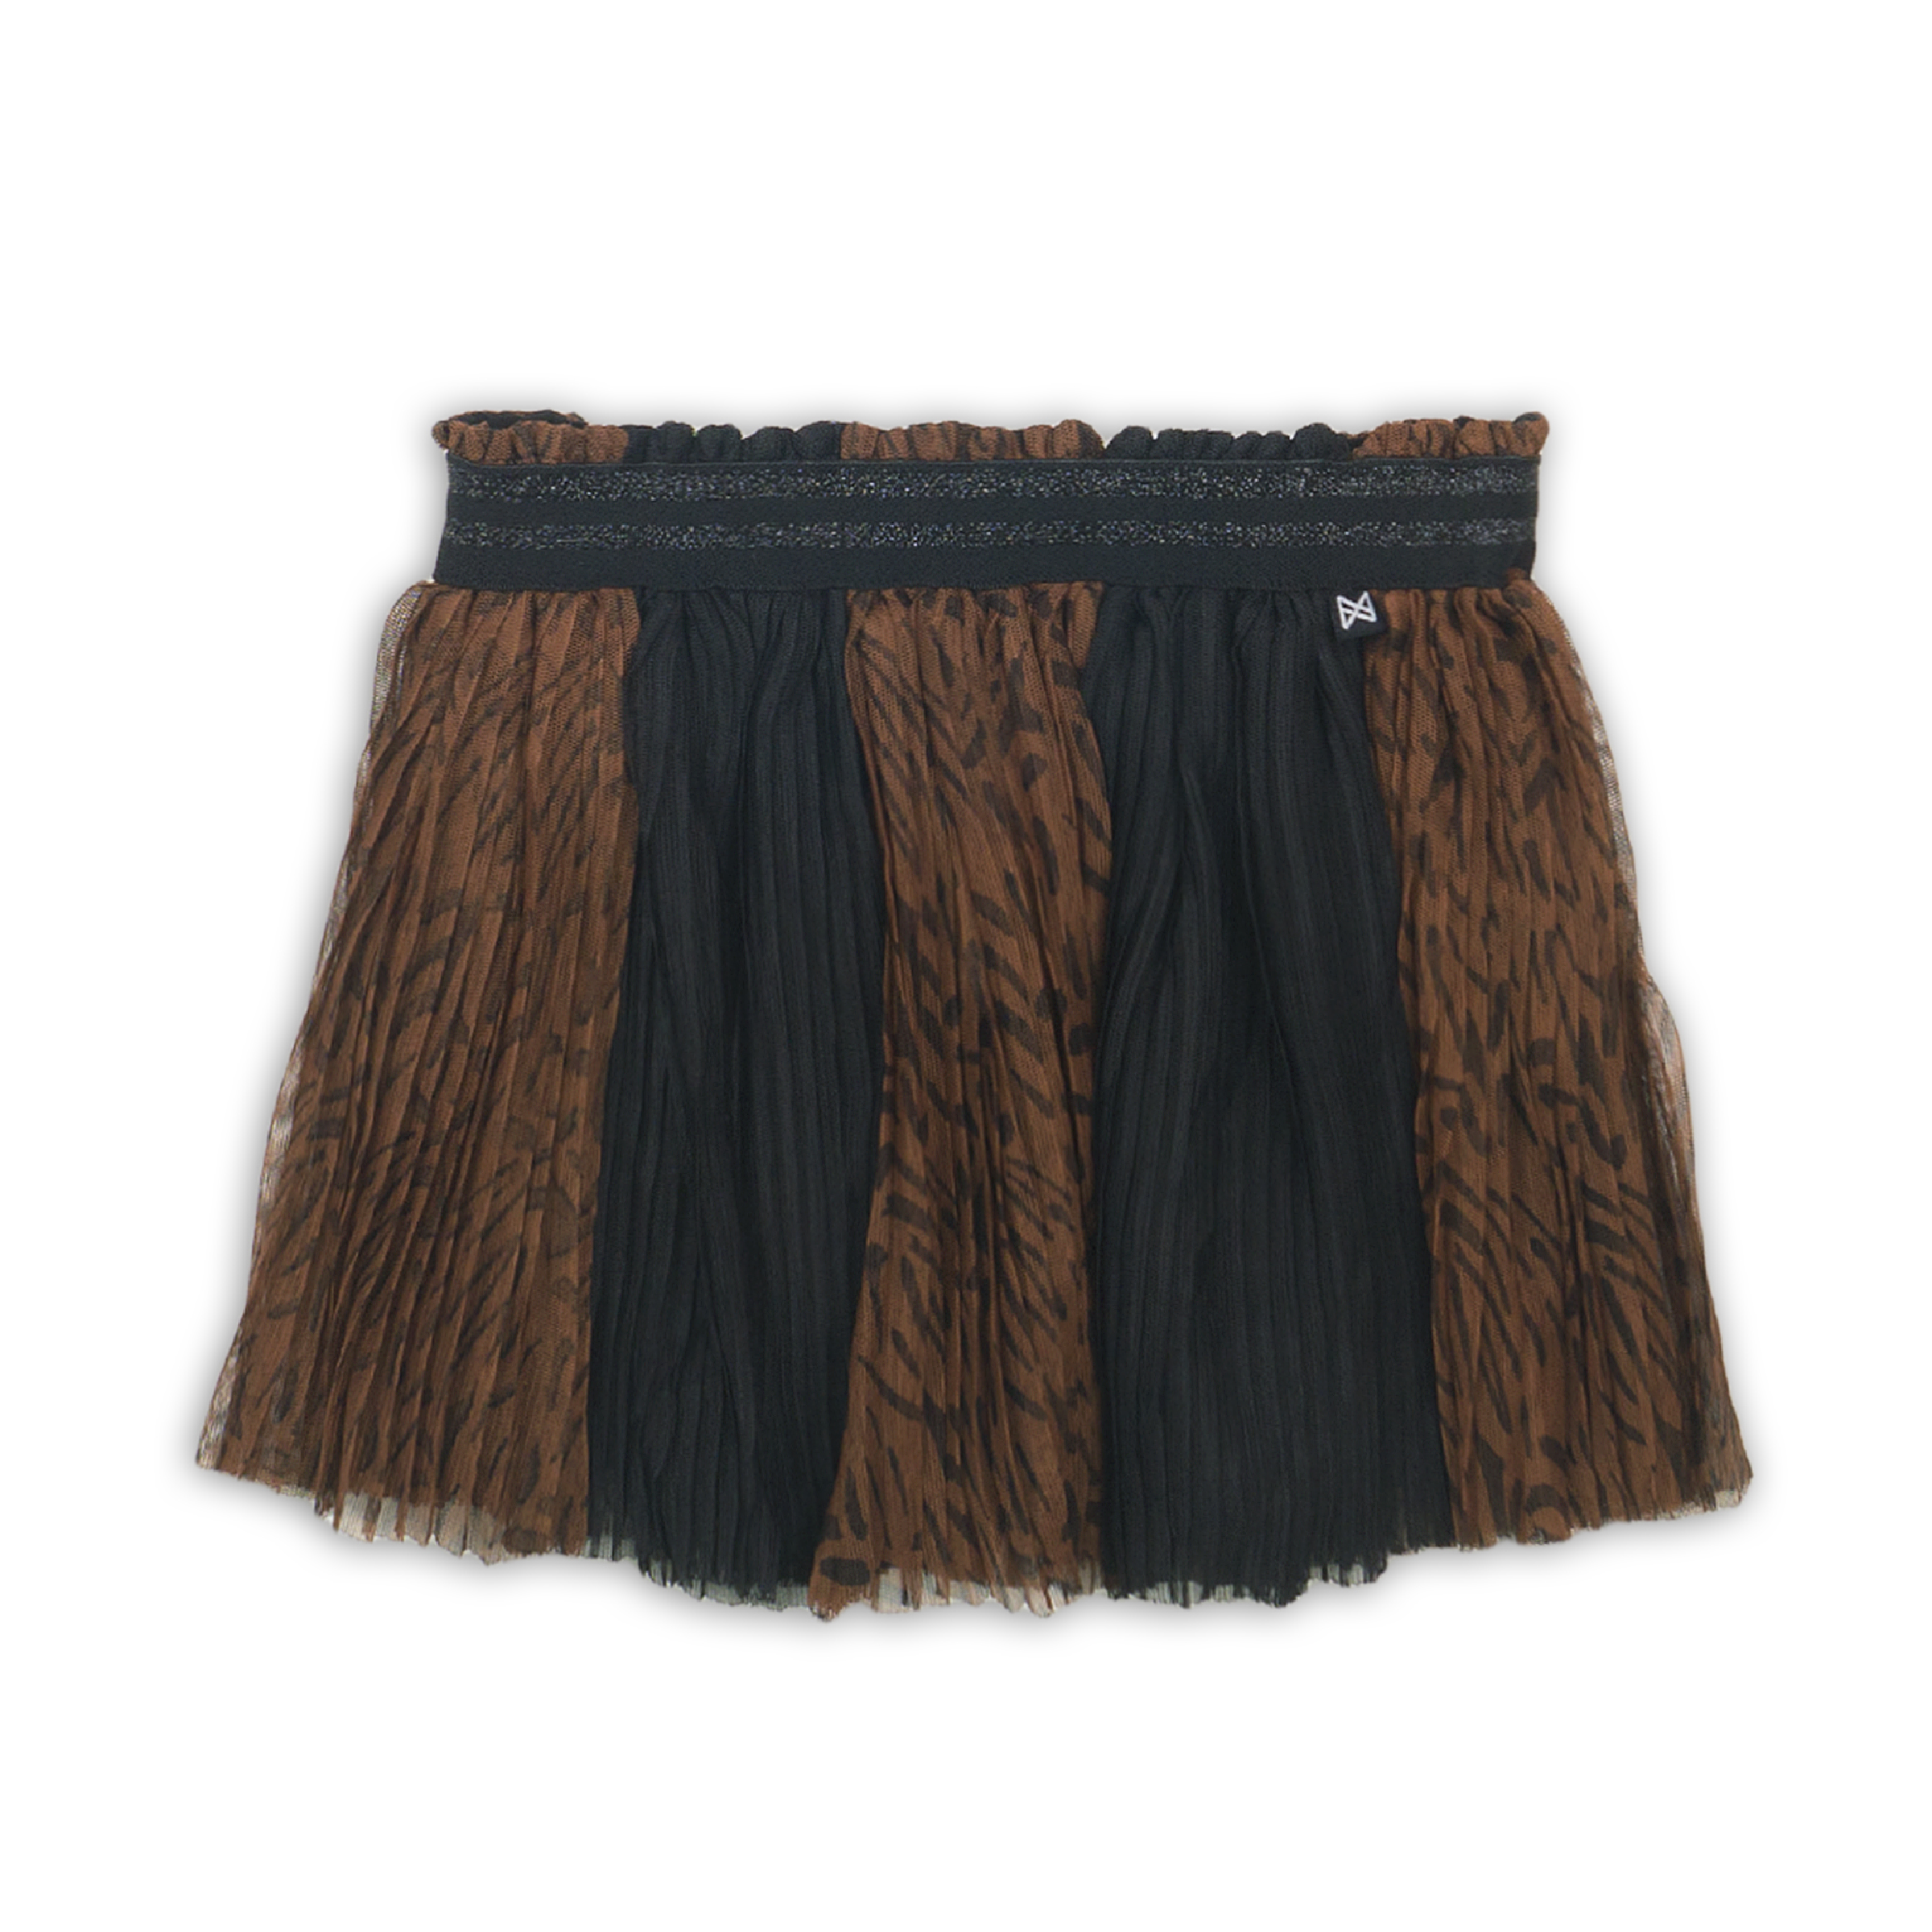 Meisjes Skirt van Koko Noko in de kleur  Black + brown aop in maat 86.